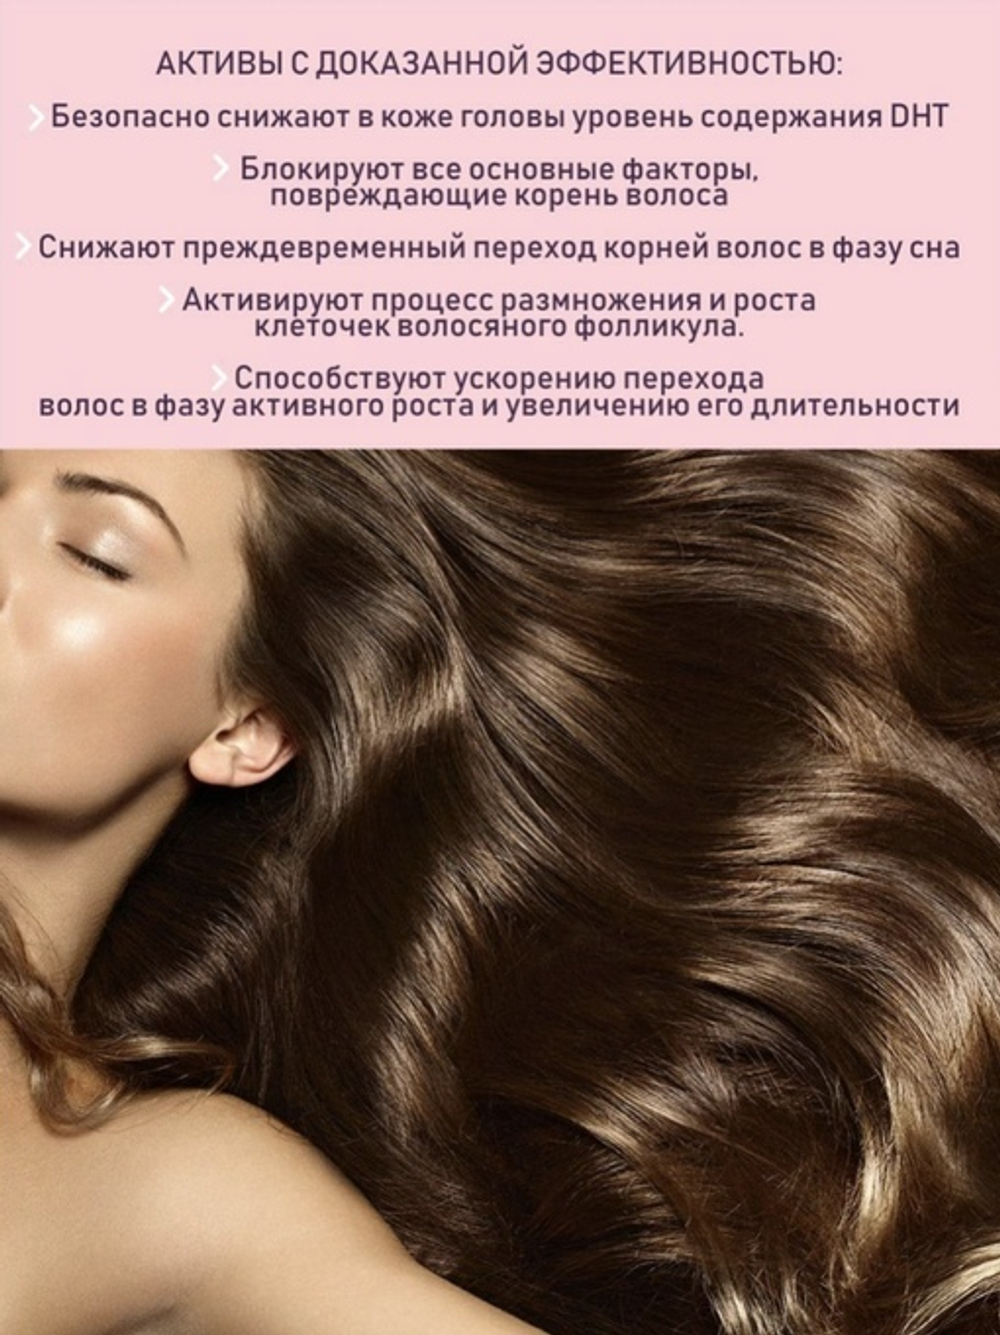 Набор ампул Для укрепления волос при АГА и стрессовом выпадении, ТМ NANO ORGANIC